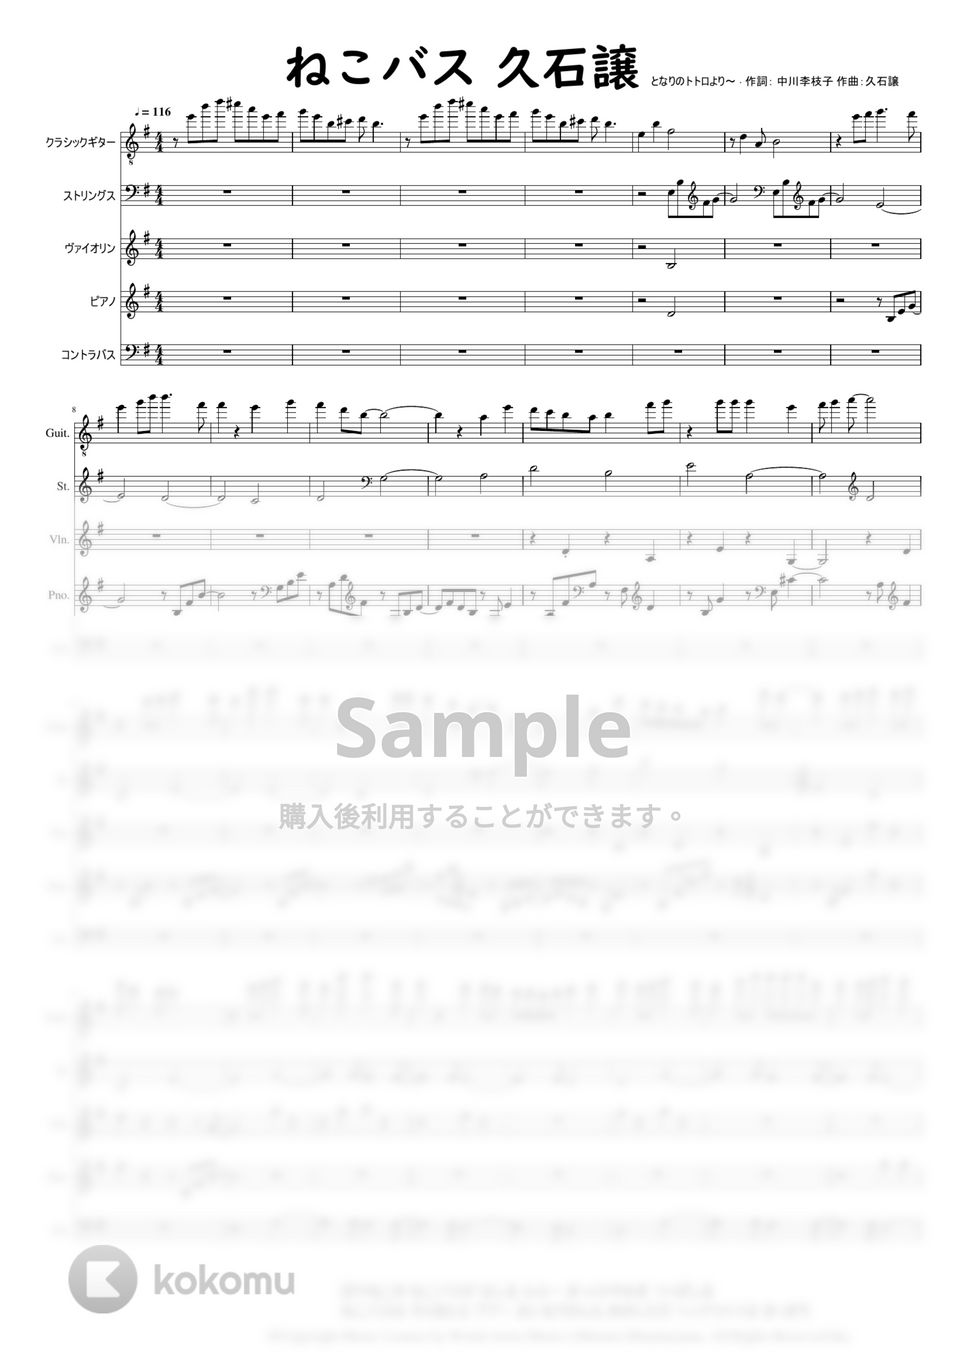 作曲：久石譲 - ねこバス (となりのトトロ) by Mitsuru Minamiyama